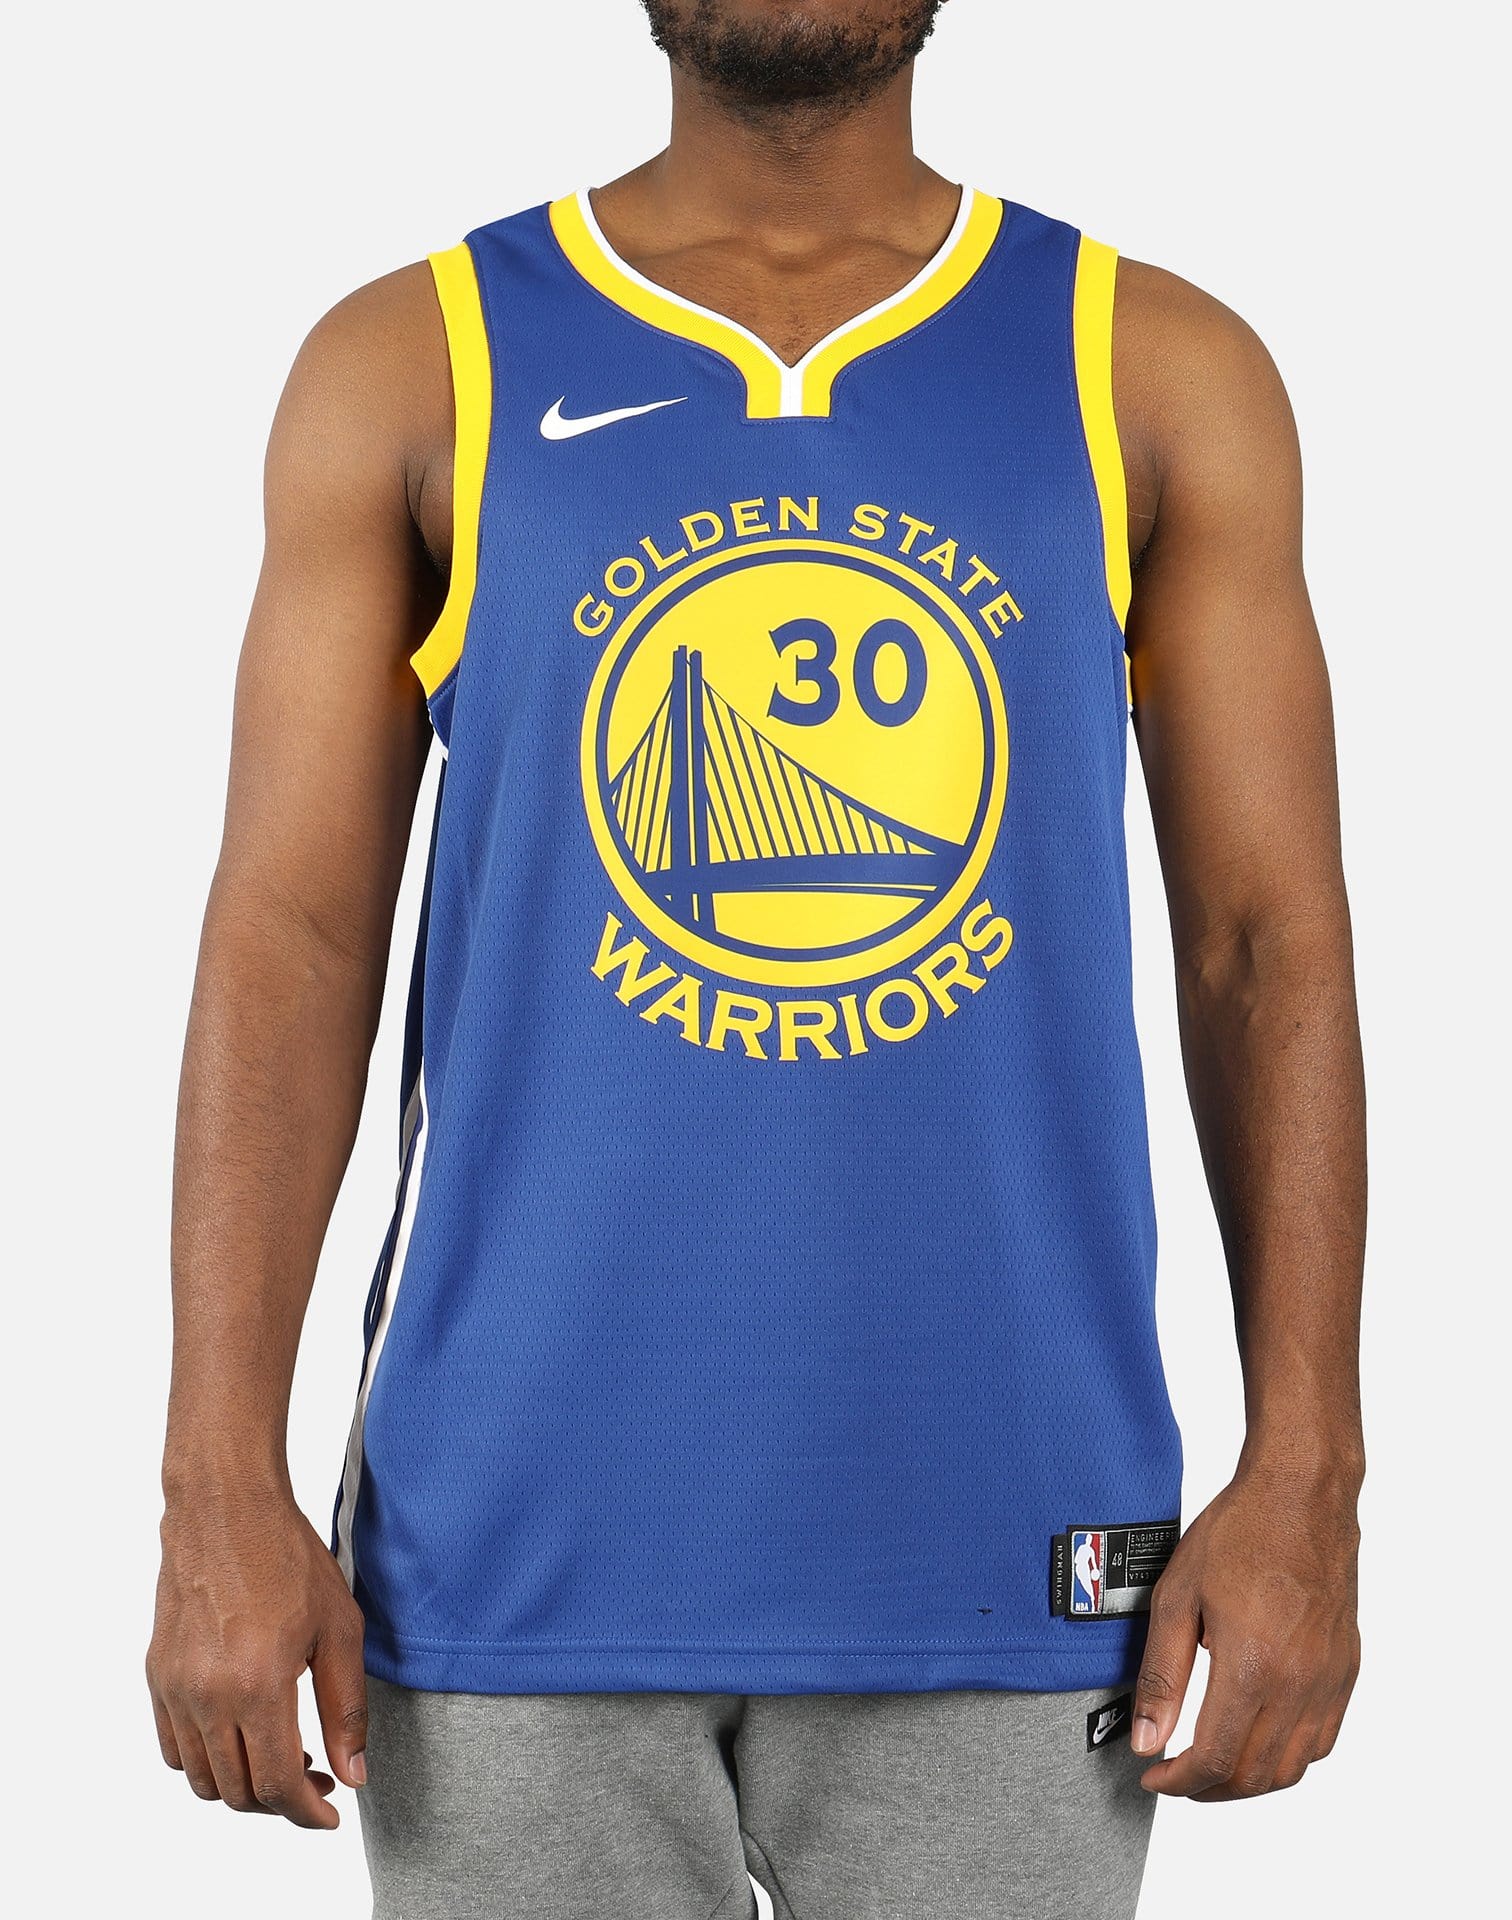 Golden State Warriors Stephen Curry Mens Association Edition Basketball  Jersey